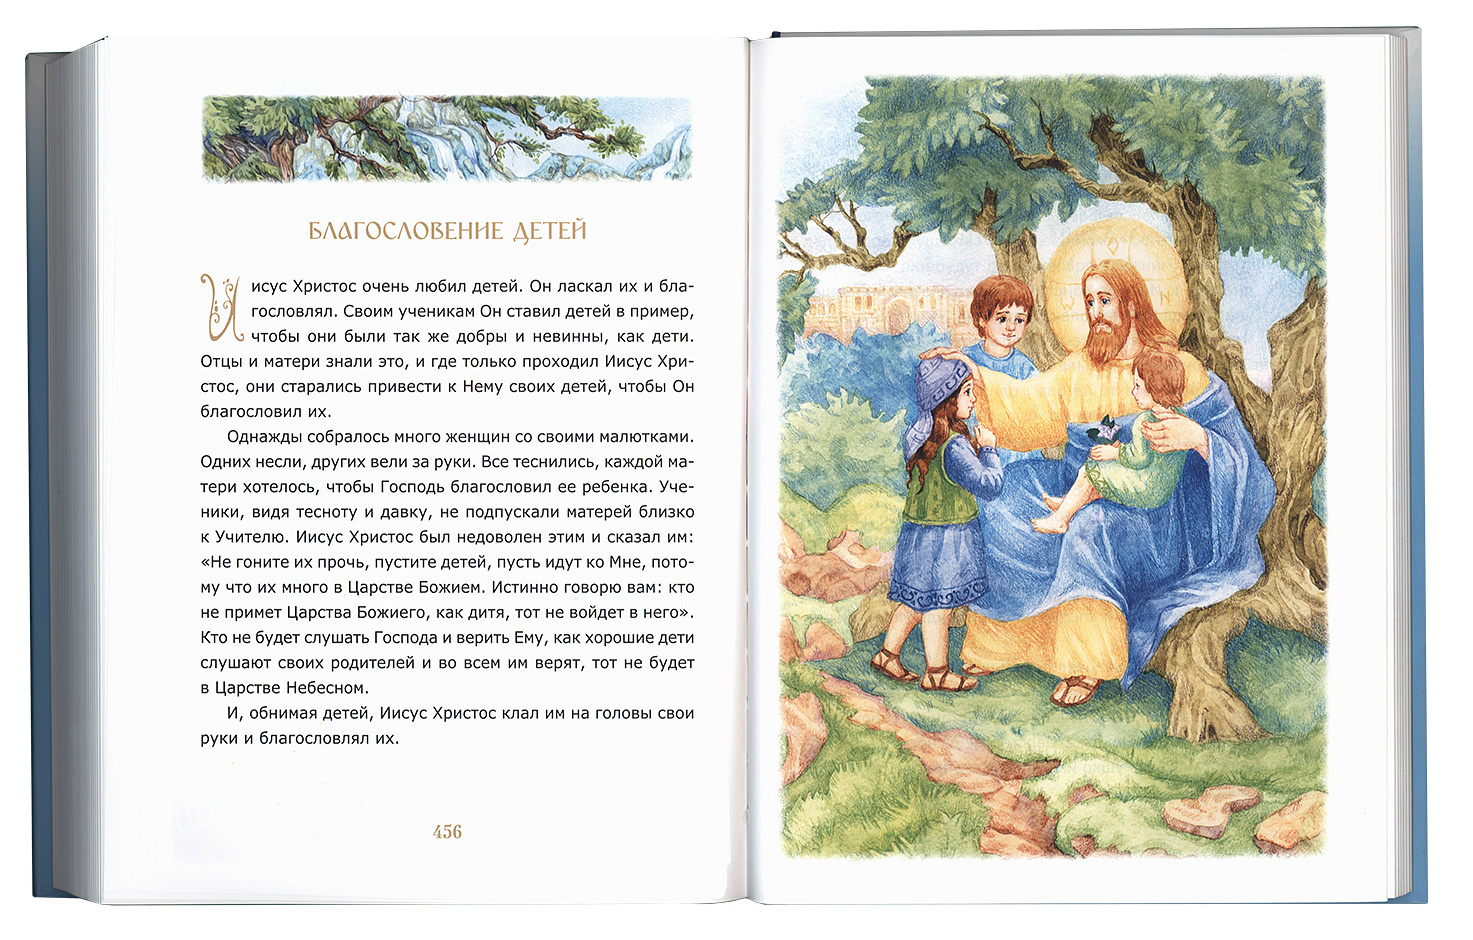 Библия для детей. Протоиерей Александр Соколов 